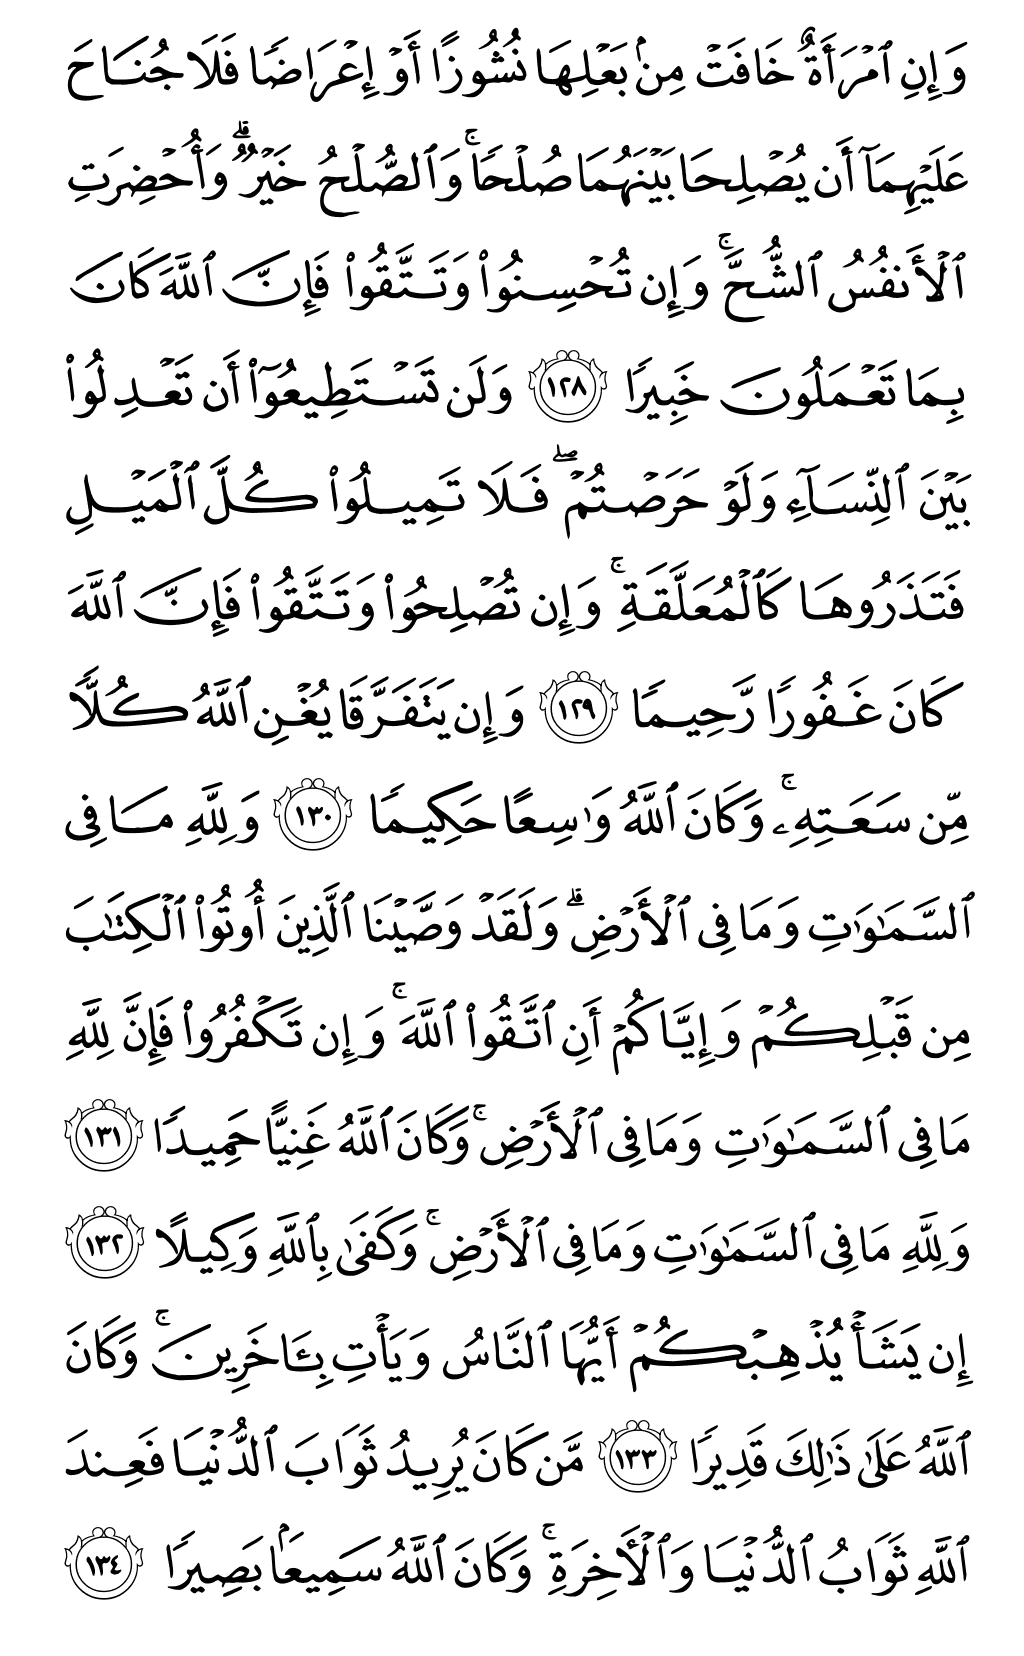 الصفحة رقم 99 من القرآن الكريم